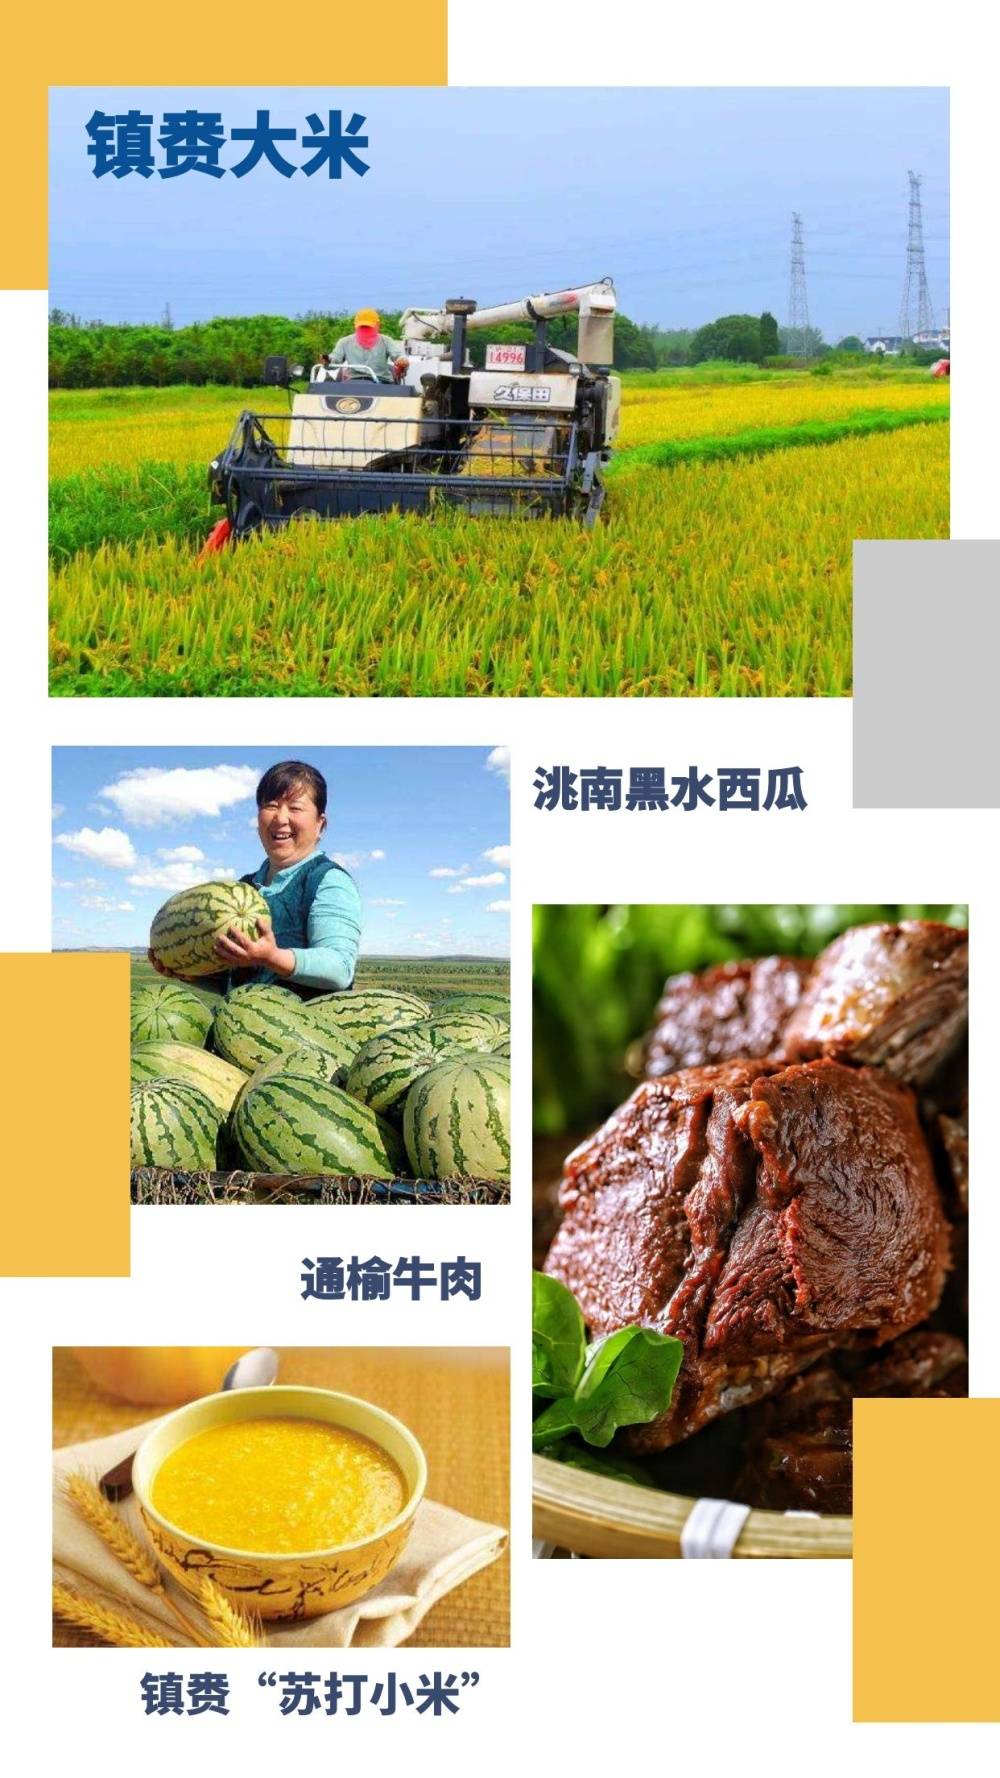 洮南辣椒是吉林省白城市洮南的特产,也是中国地理标志产品 黑水西瓜